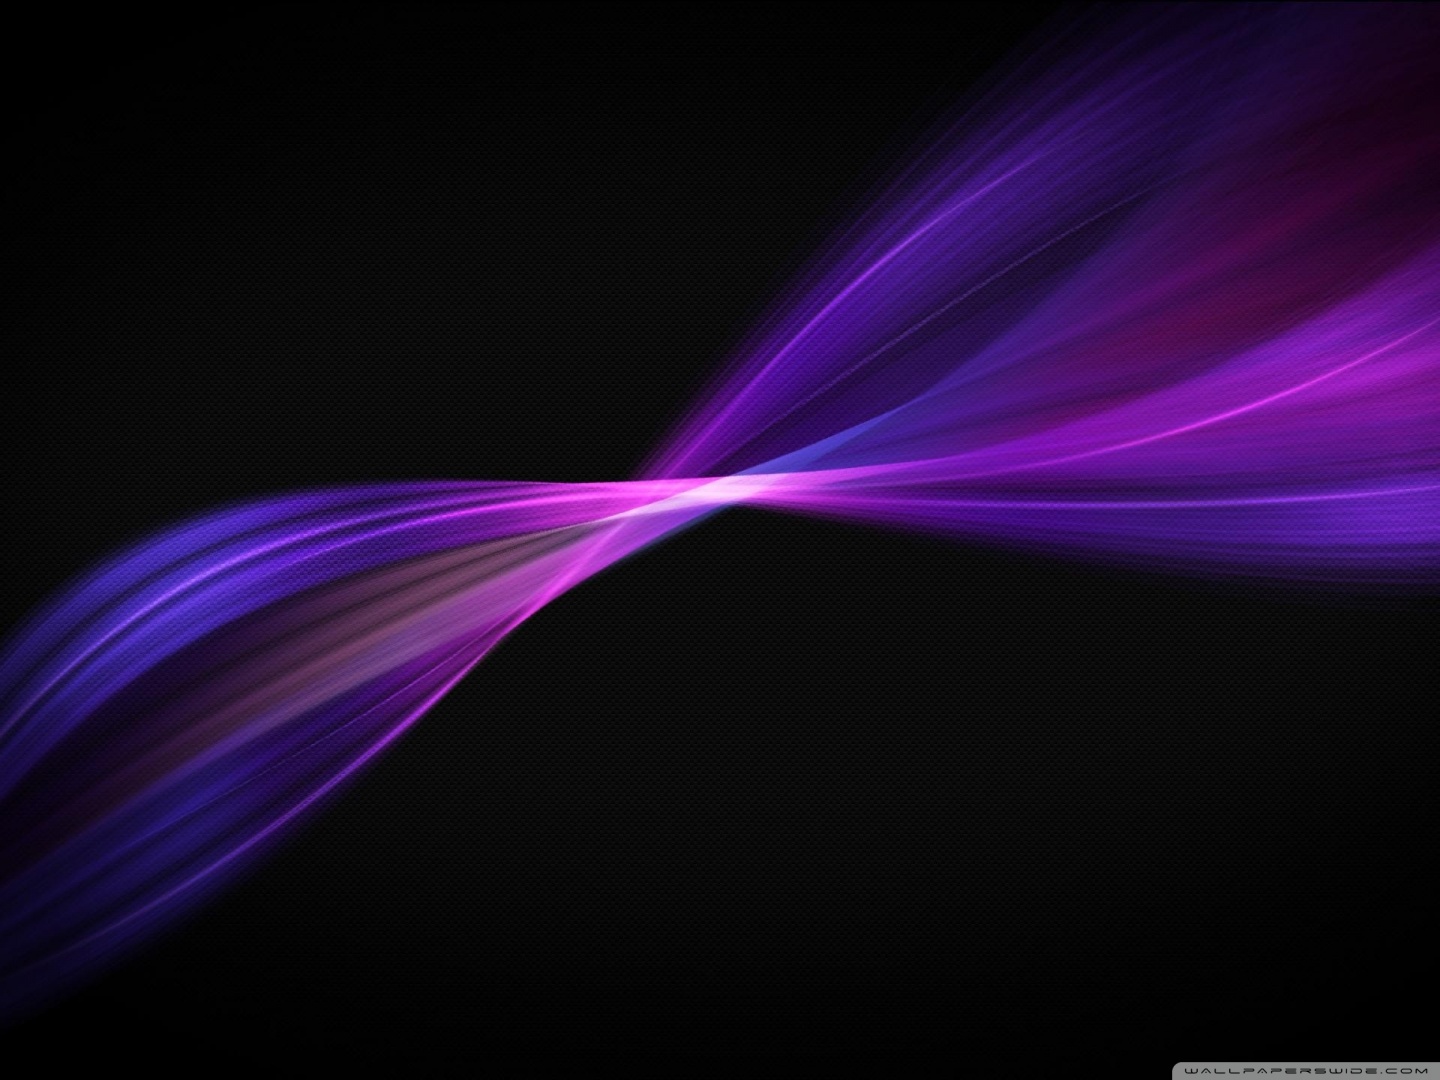 Purple Wavy Lines Ultra HD Desktop Background Wallpaper for 4K UHD TV ...